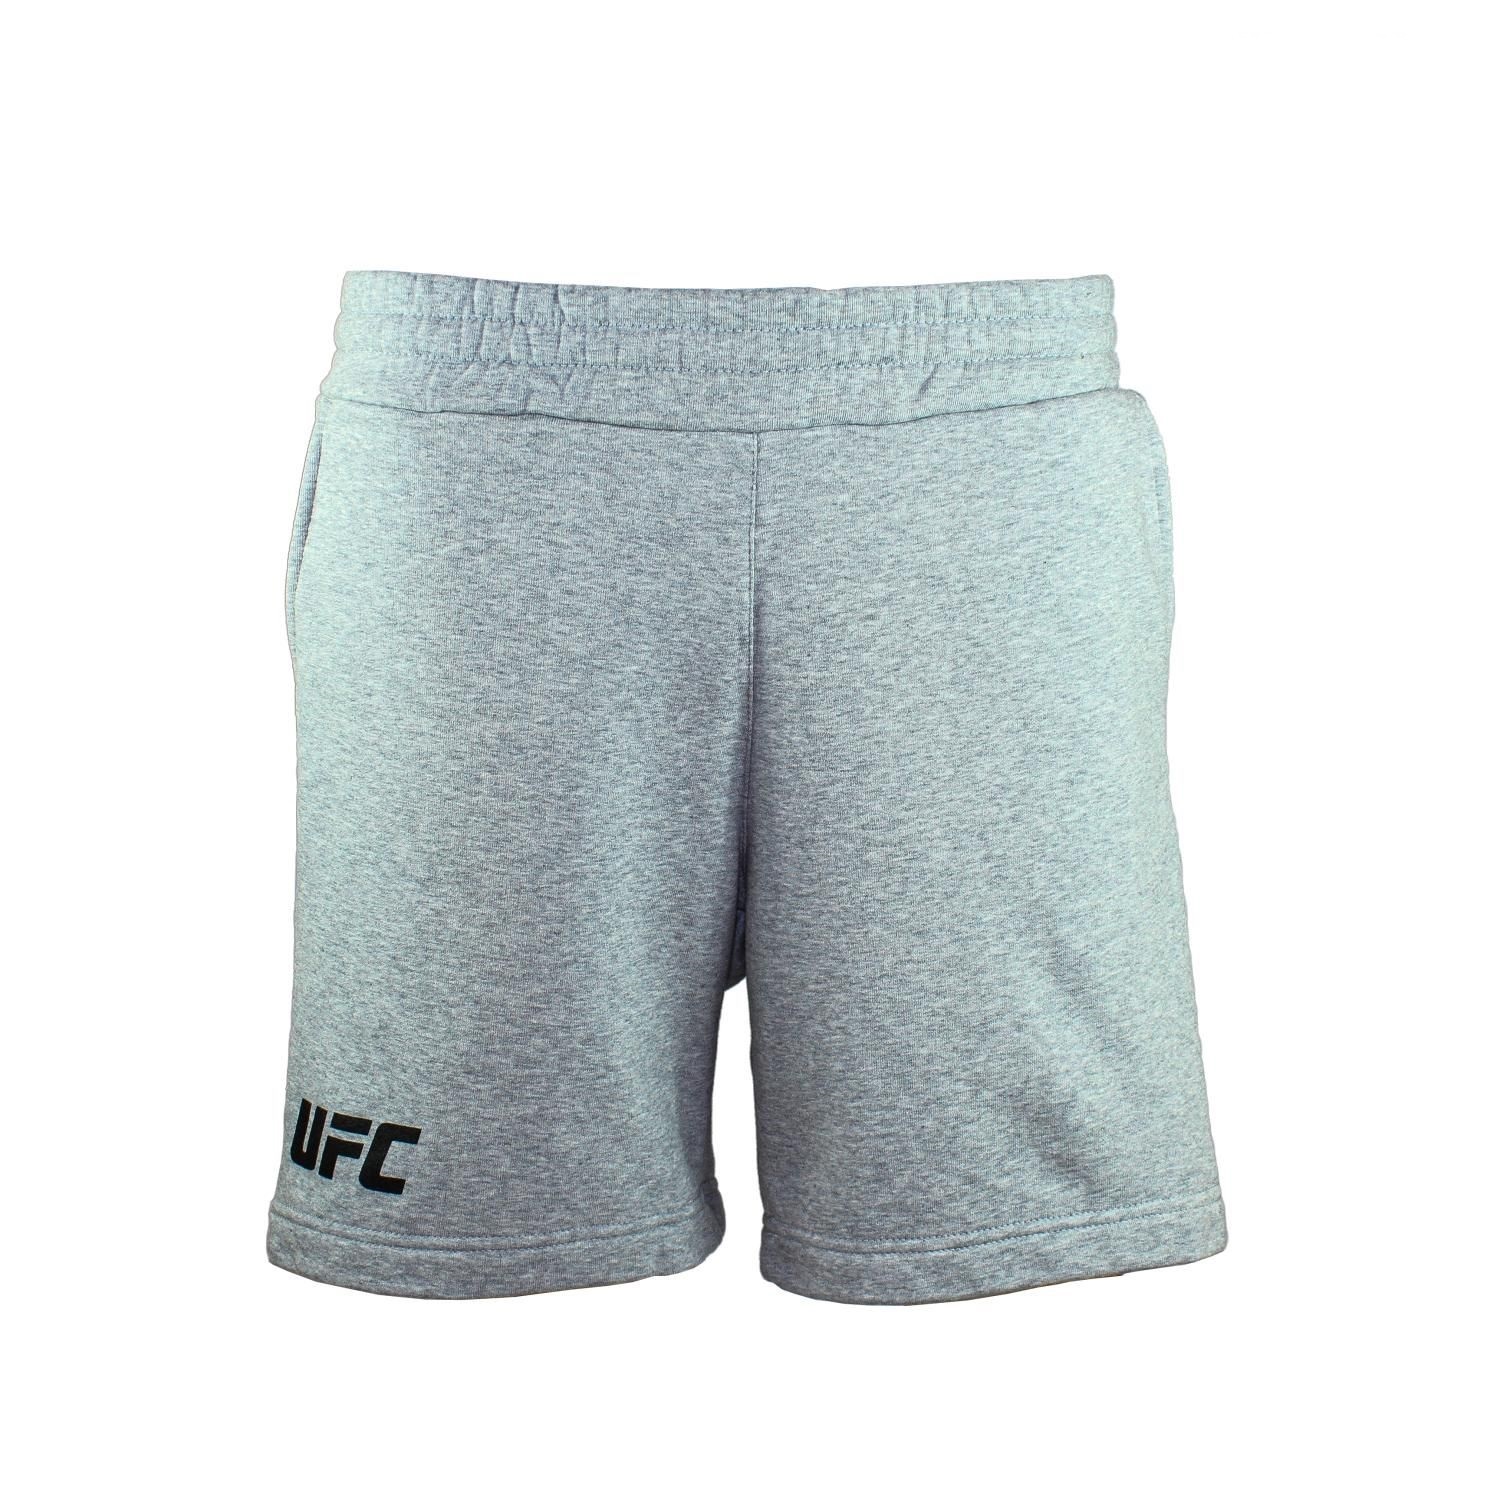 Спортивные шорты мужские UFC UFC SHORTS LOGO серые L